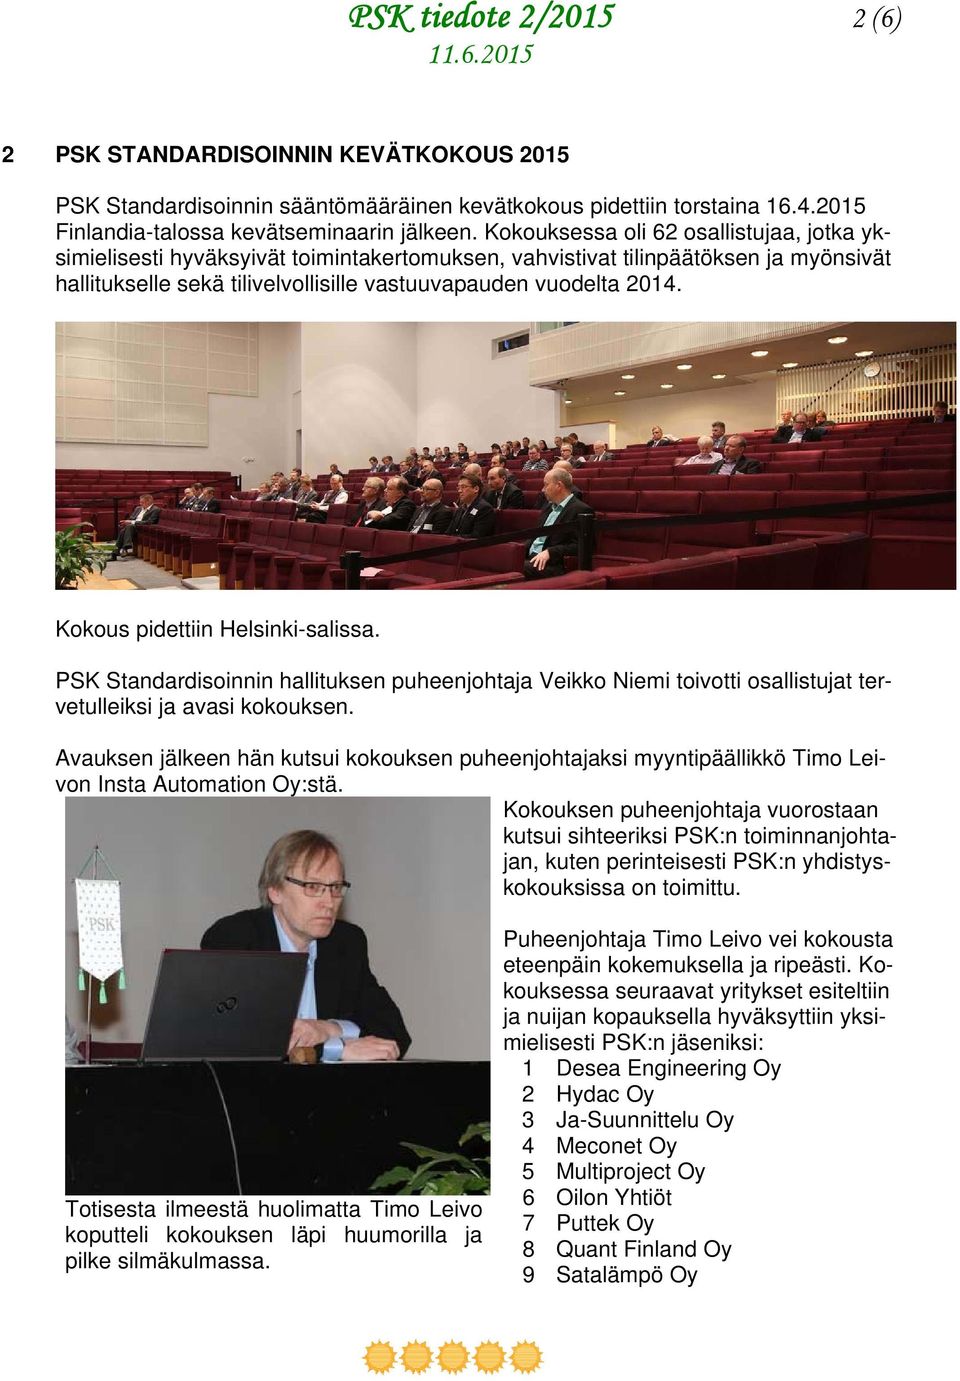 Kokous pidettiin Helsinki-salissa. PSK Standardisoinnin hallituksen puheenjohtaja Veikko Niemi toivotti osallistujat tervetulleiksi ja avasi kokouksen.